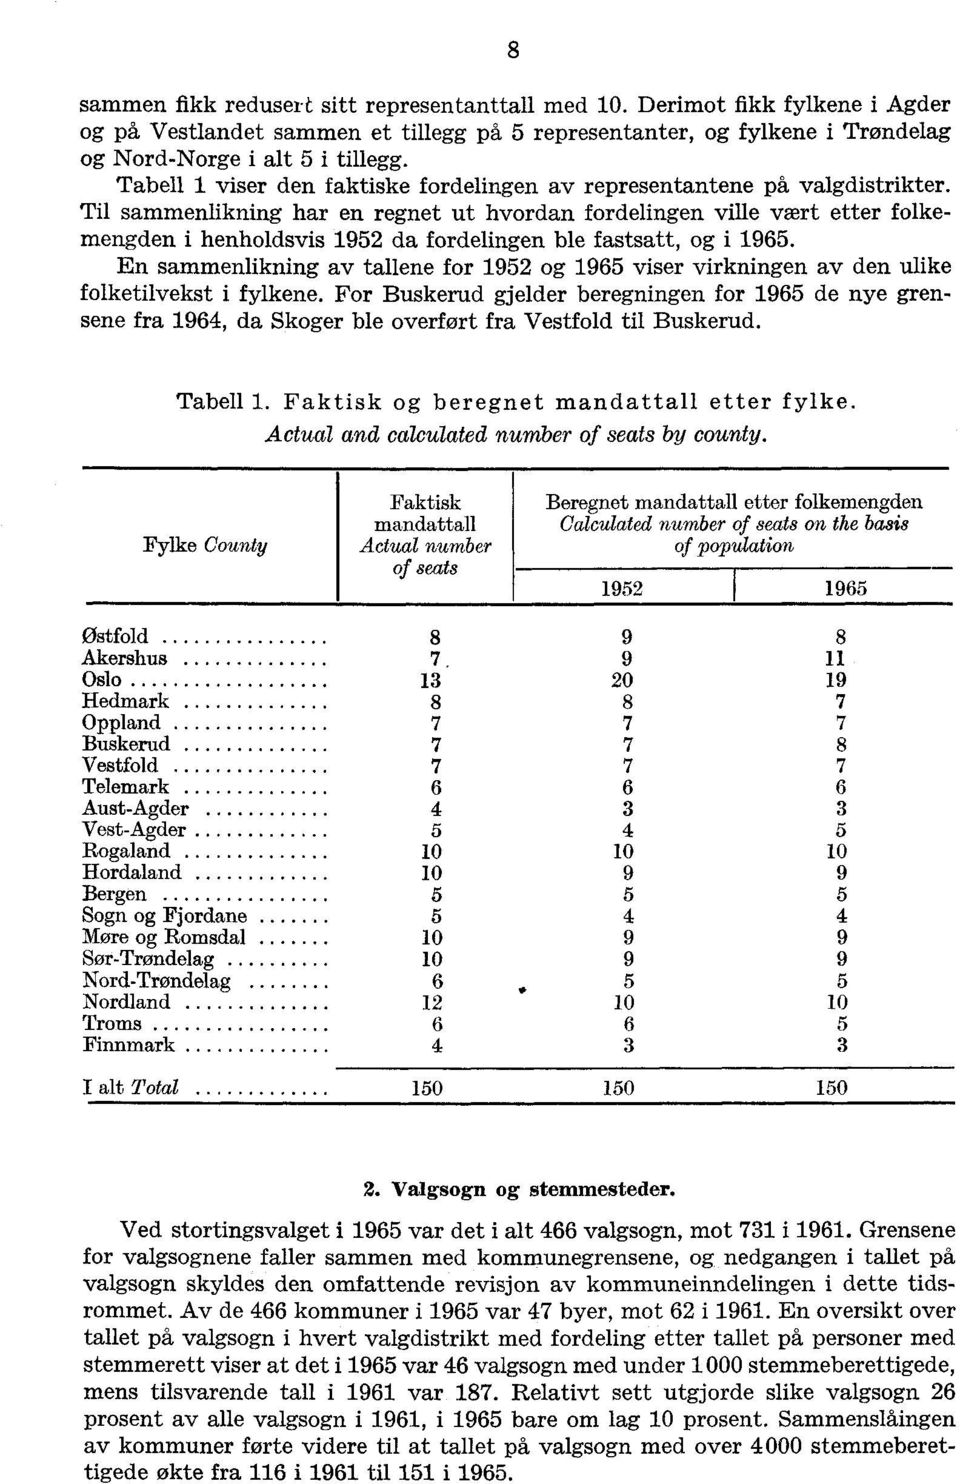 Til sammenlikning har en regnet ut hvordan fordelingen ville vært etter folkemengden i henholdsvis 1952 da fordelingen ble fastsatt, og i 1965.